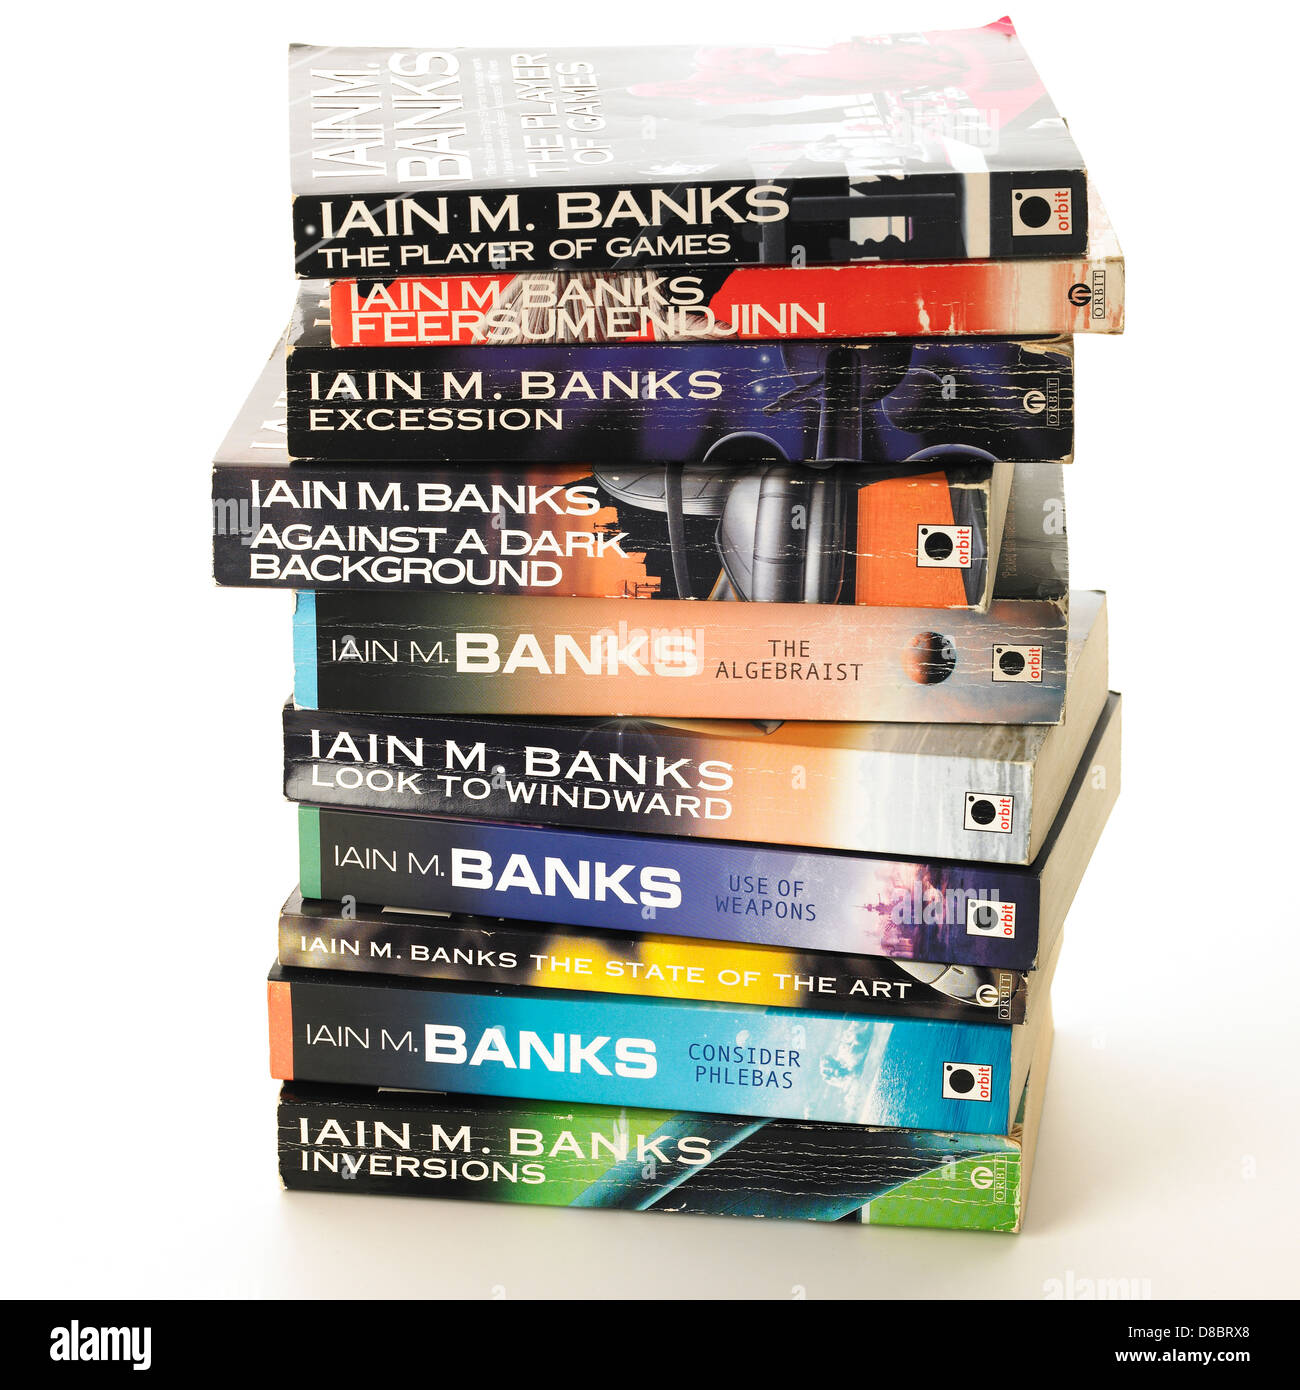 https://c8.alamy.com/comp/D8BRX8/the-culture-novels-by-author-iain-m-banks-D8BRX8.jpg